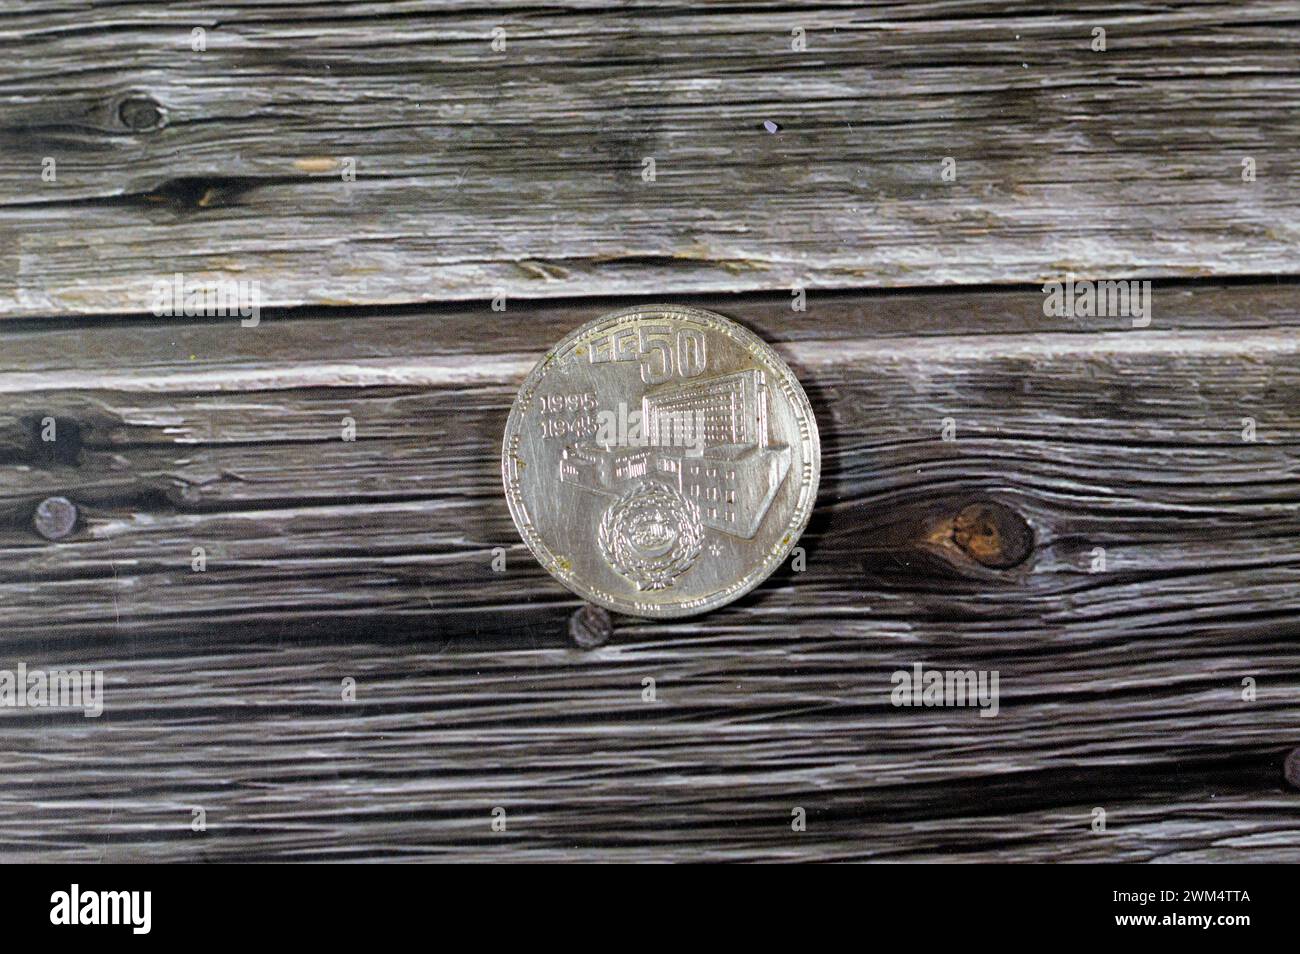 5 fünf ägyptische Pfund Silber nicht im Umlauf befindliche Münze als Gedenken an das goldene Jubiläum 50 Jahre der Arabischen Liga 1945 - 1995, ein politisches Organ Stockfoto